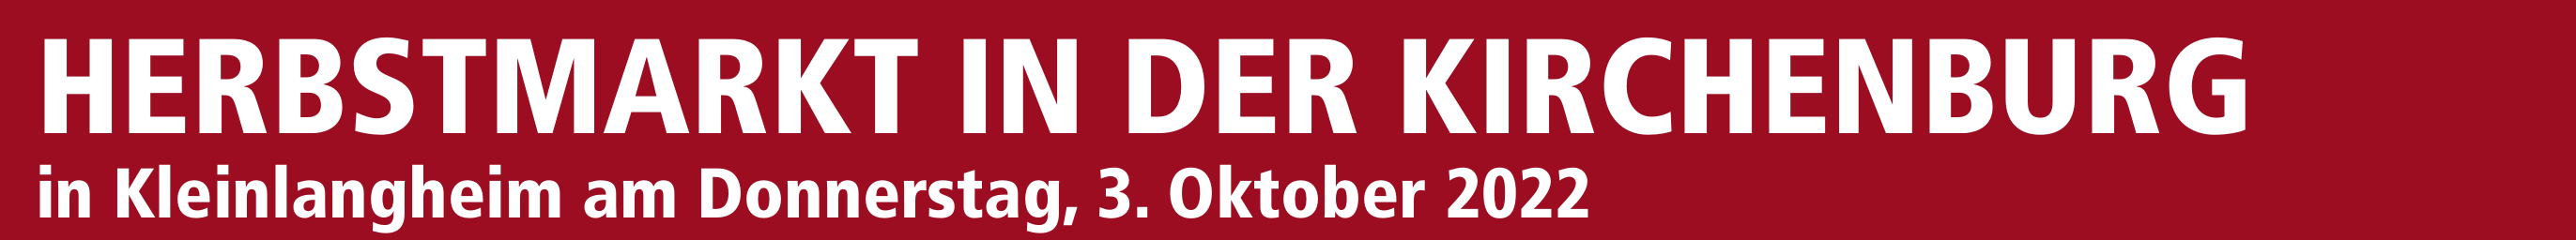 Herbstmarkt in der Kirchenburg in Kleinlangheim am Donnerstag, 3. Oktober 2022